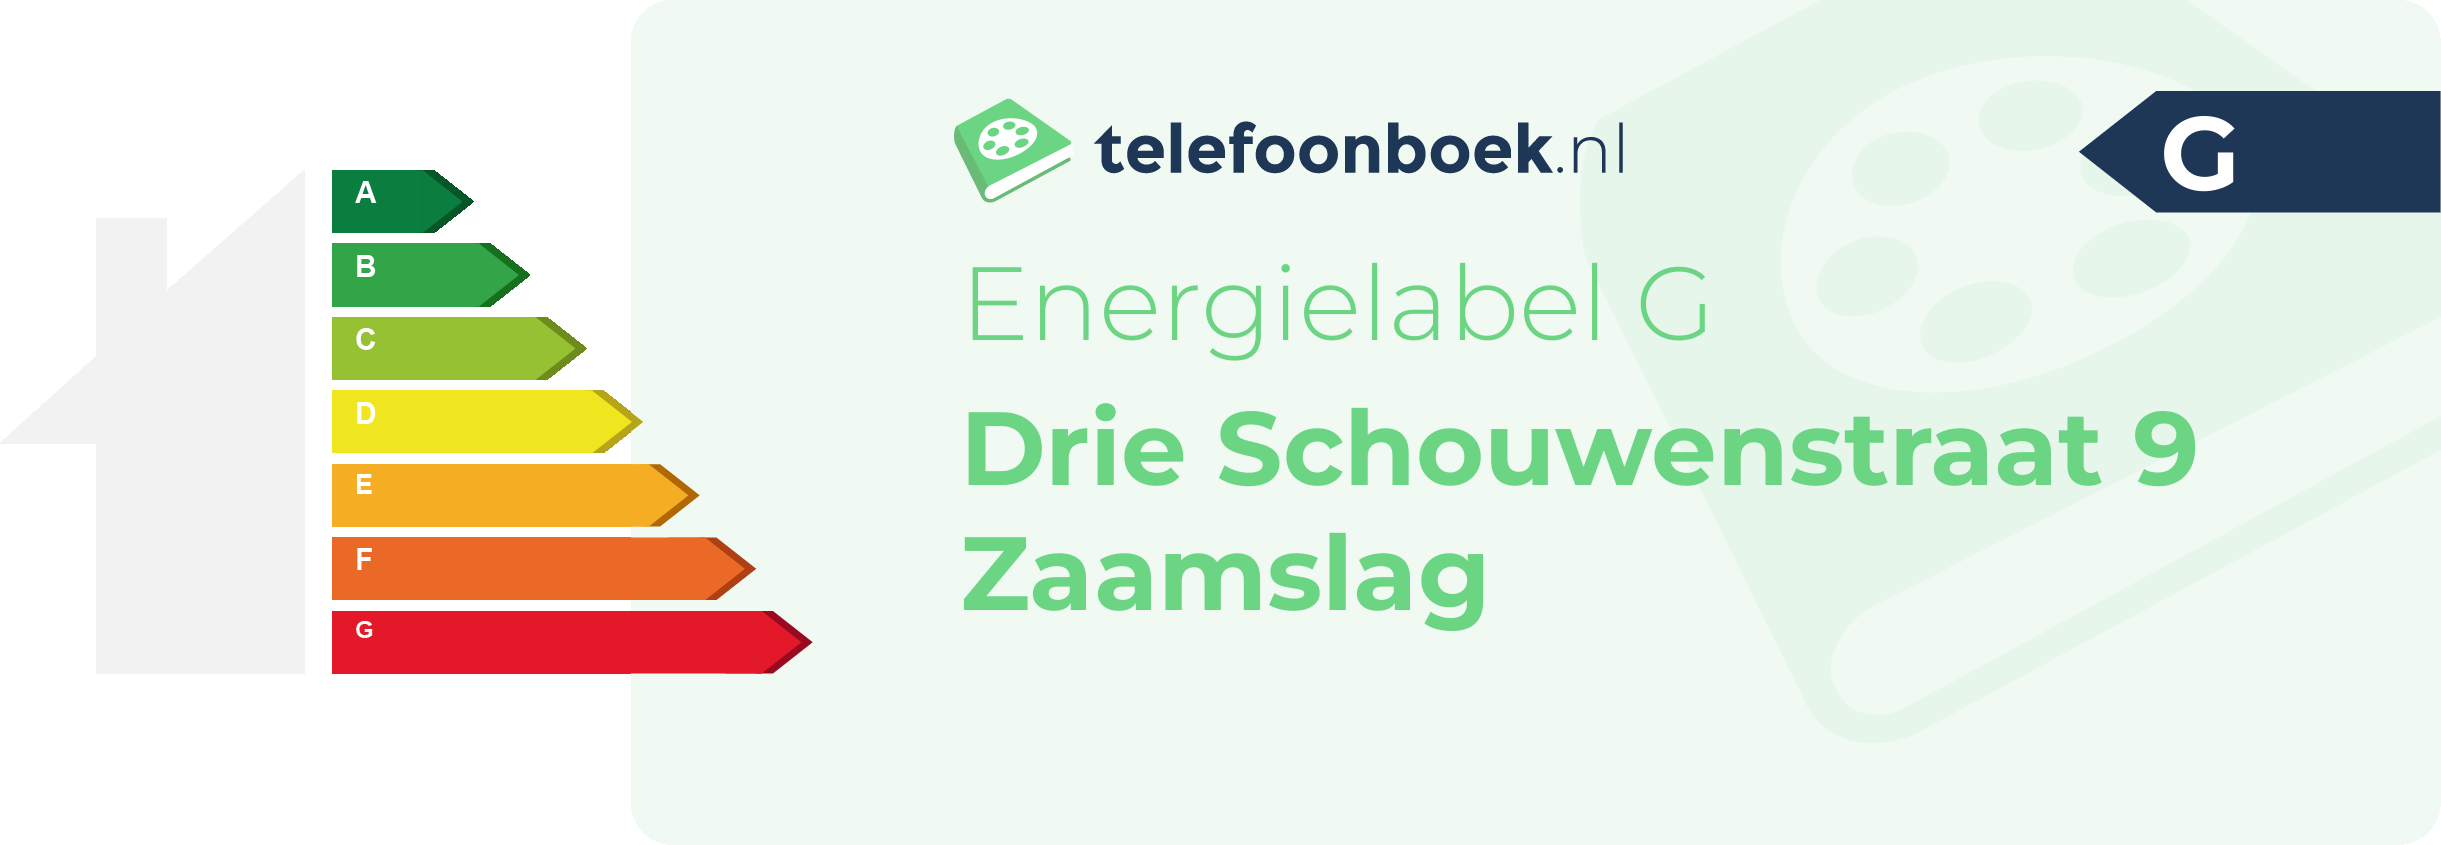 Energielabel Drie Schouwenstraat 9 Zaamslag